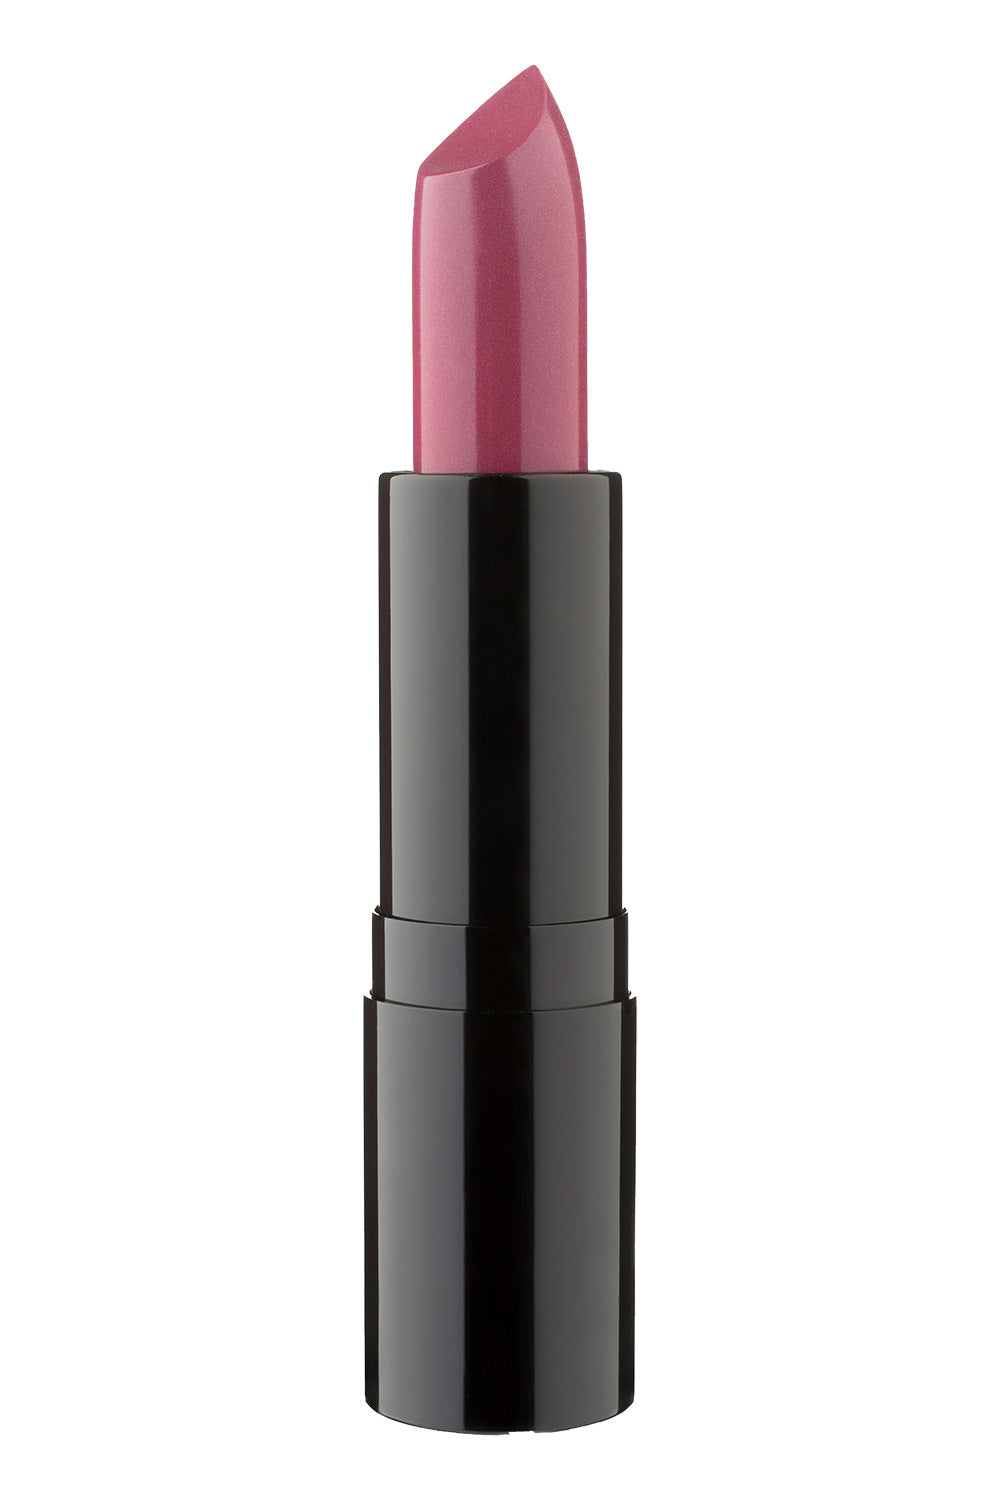 Beacon Street - Type 2 Lipstick